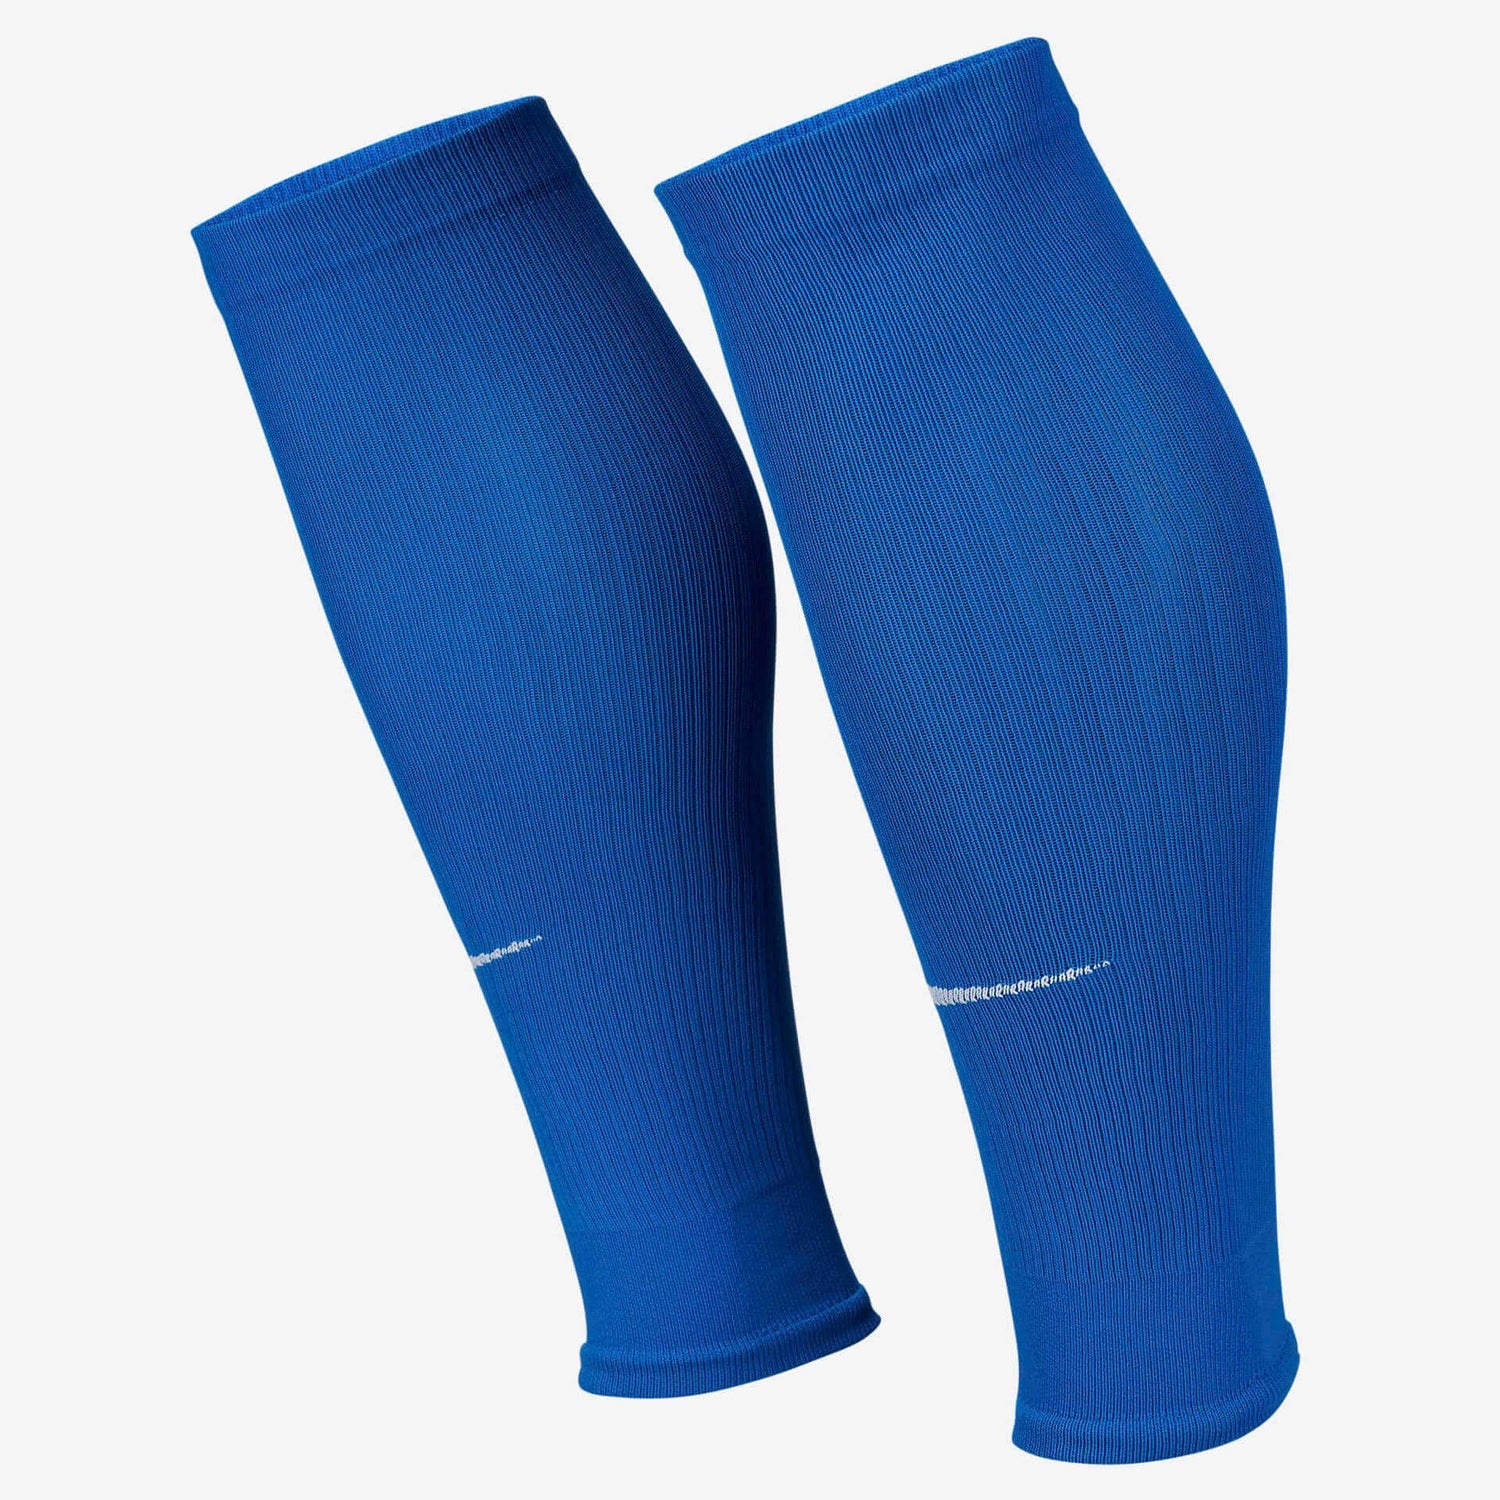 Nike Strike Sleeves Socks Blue (Pair - Lateral)